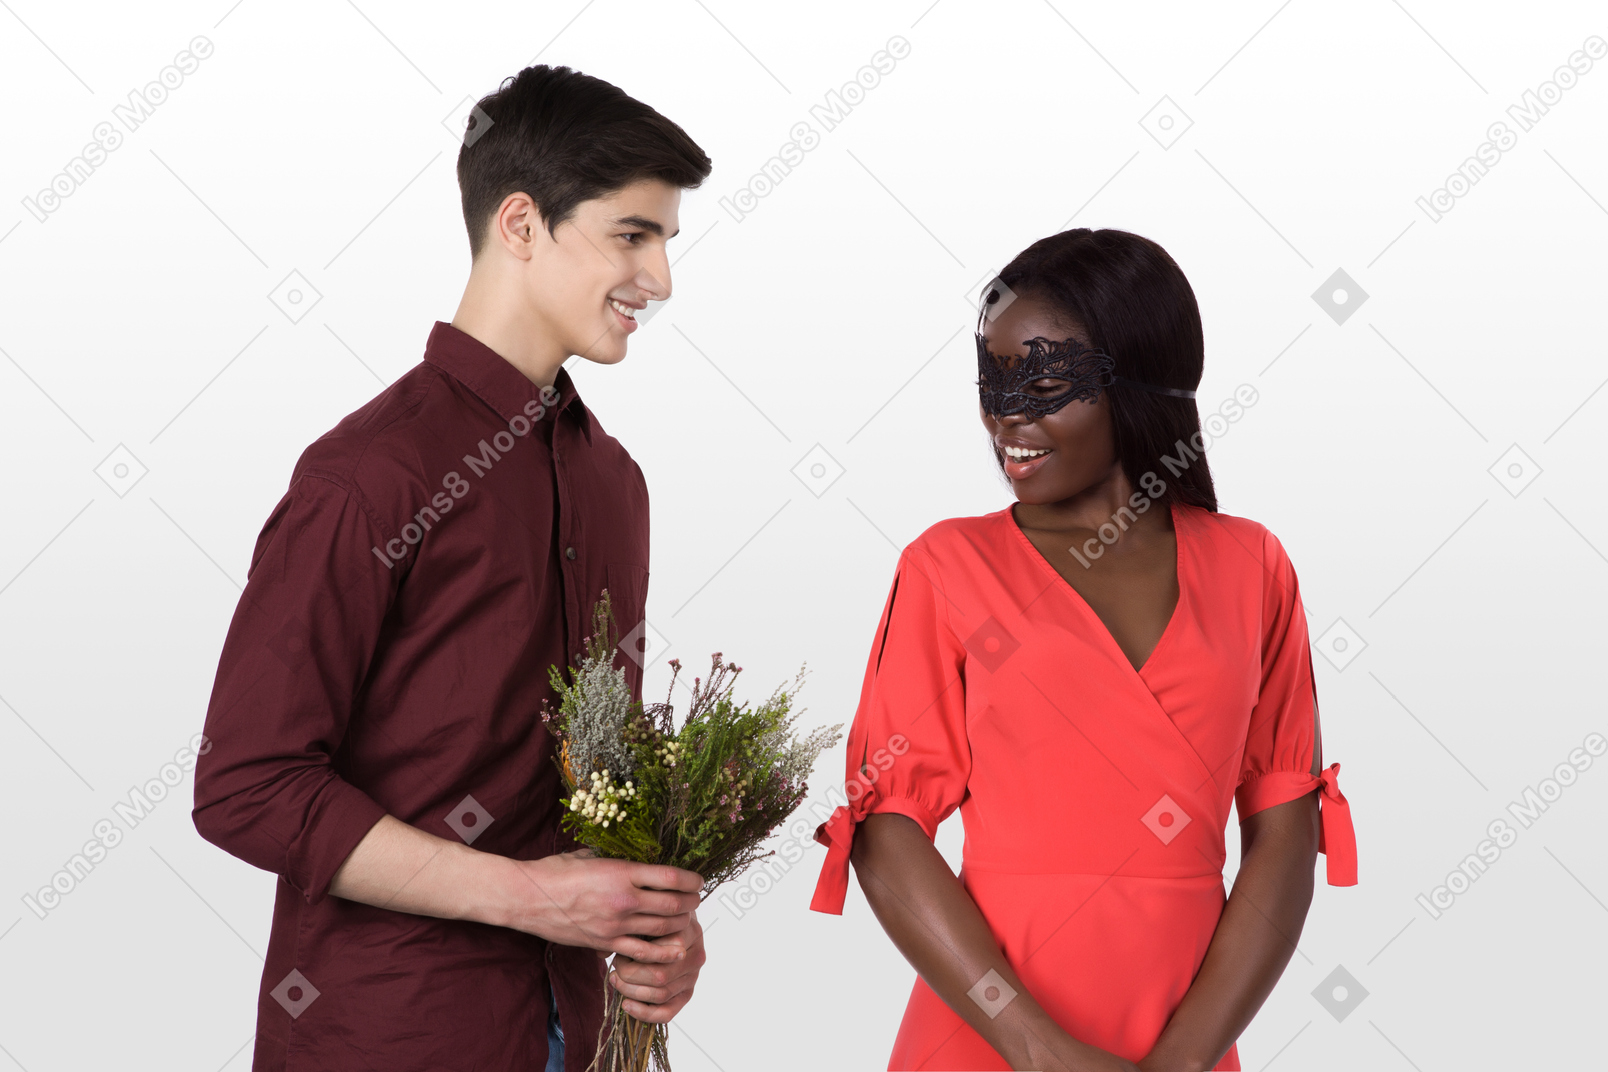 Красавец принёс цветы своей девушке в карнавальной маске